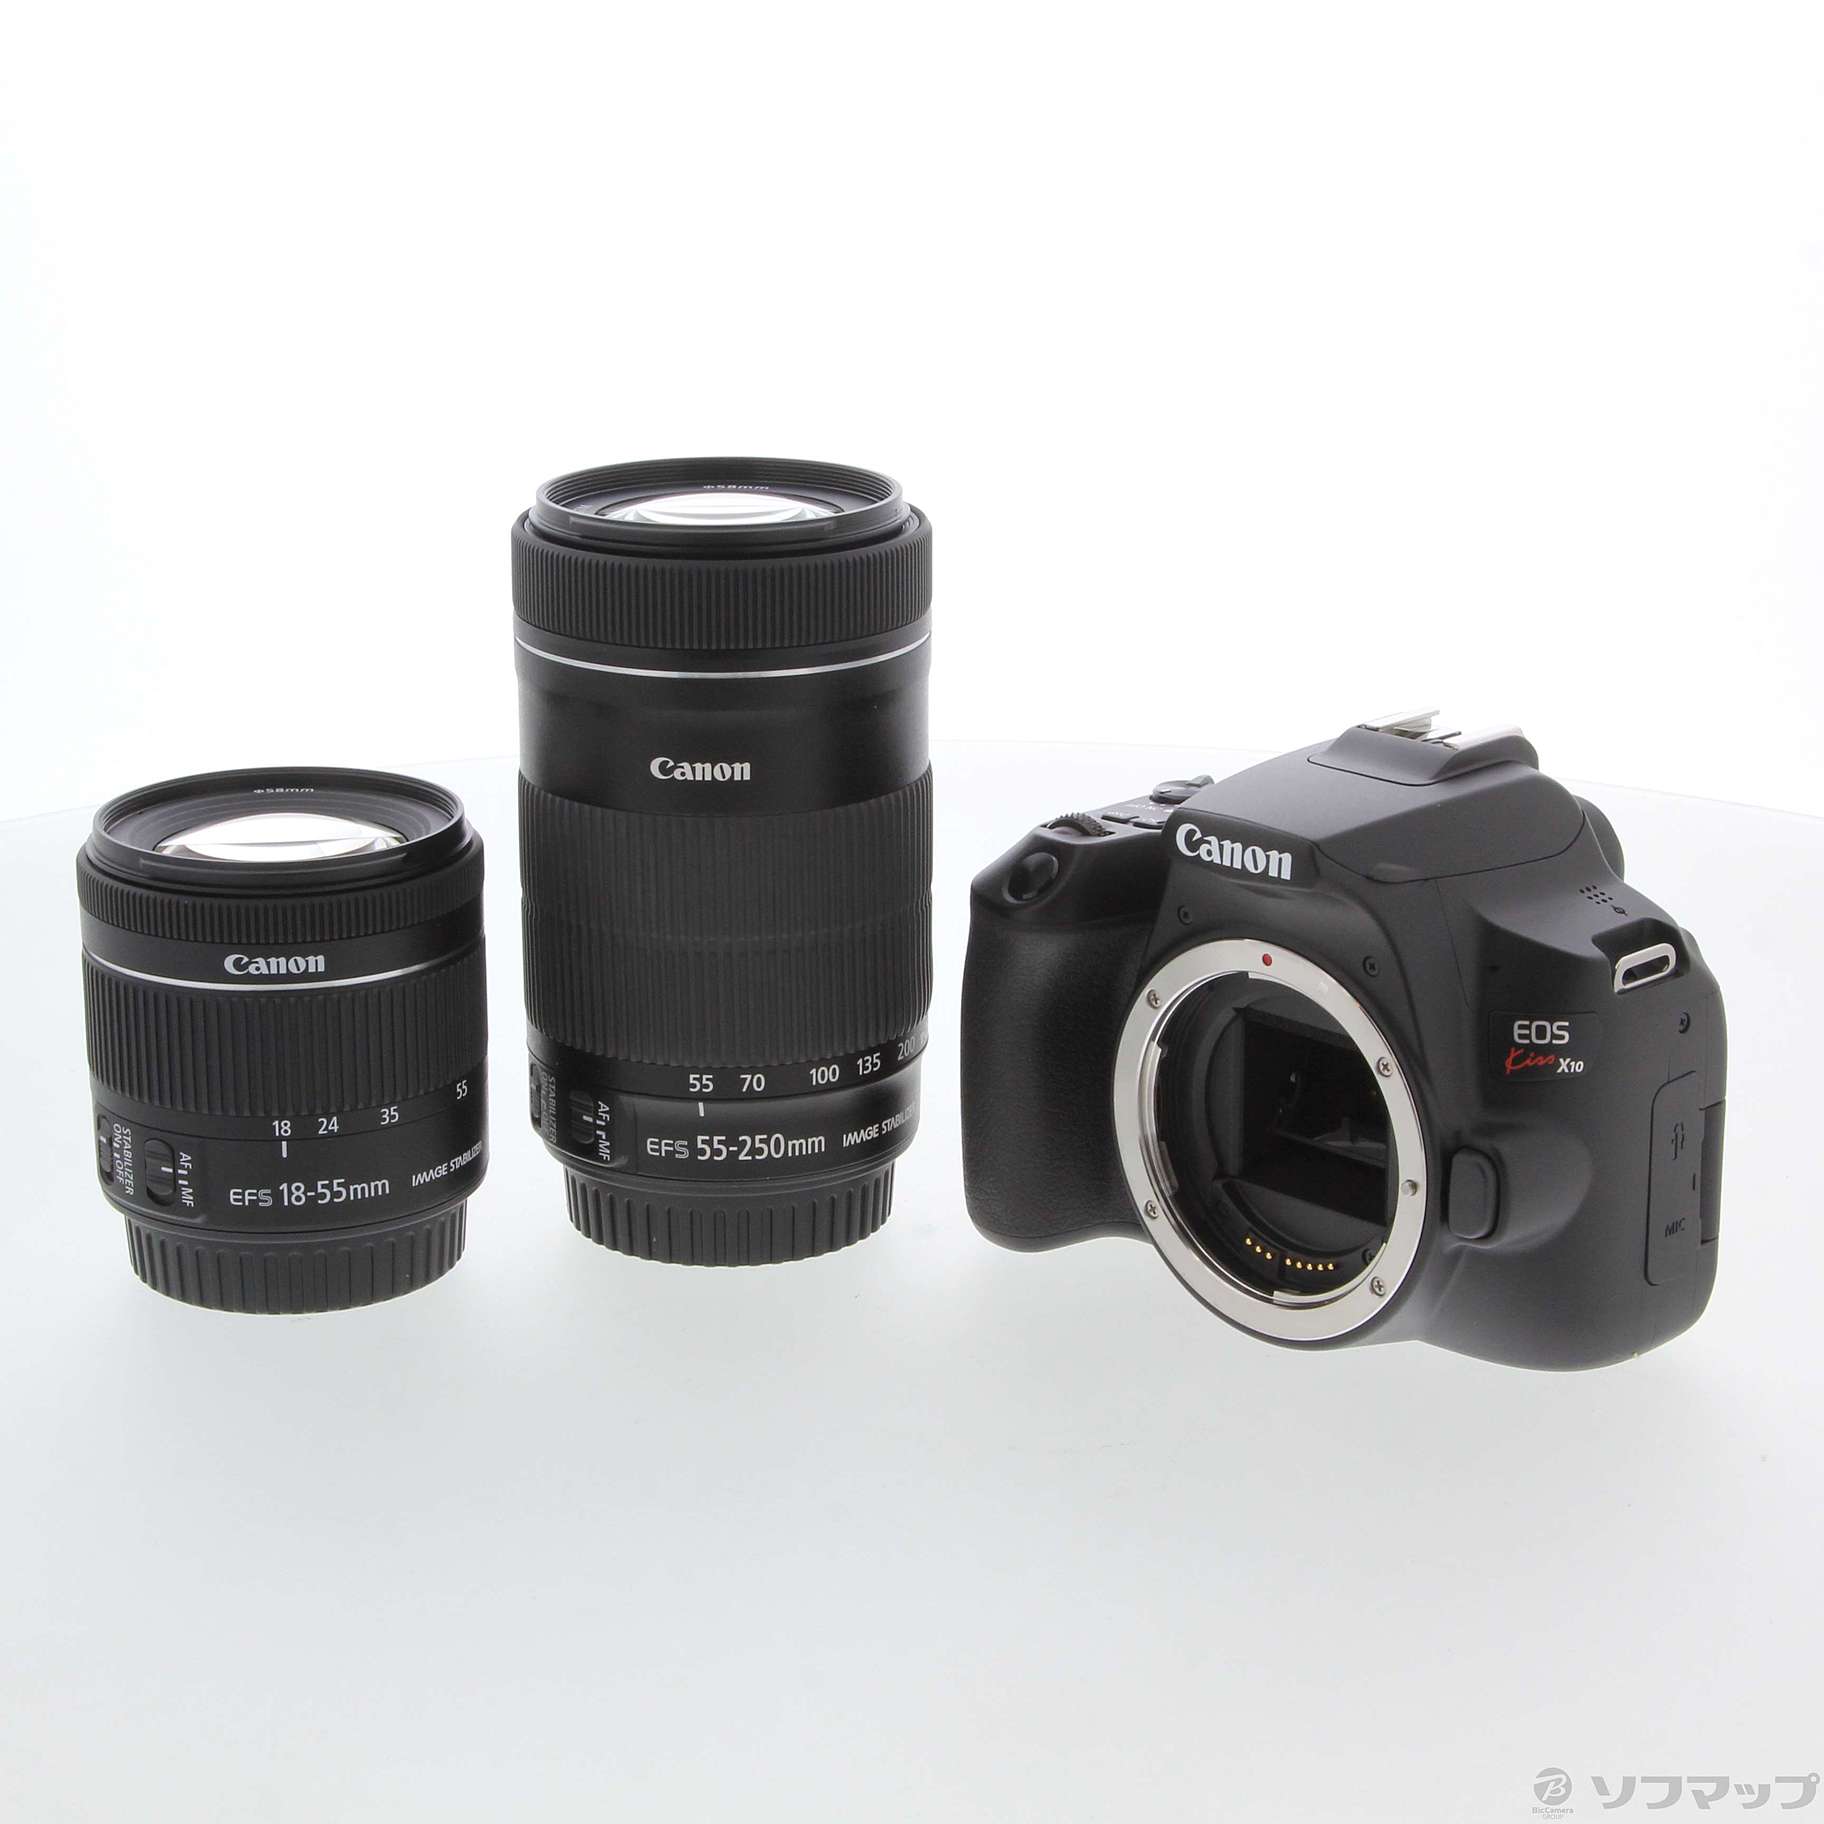 Canon EOS KISS x10 ダブルズームレンズキット - カメラ